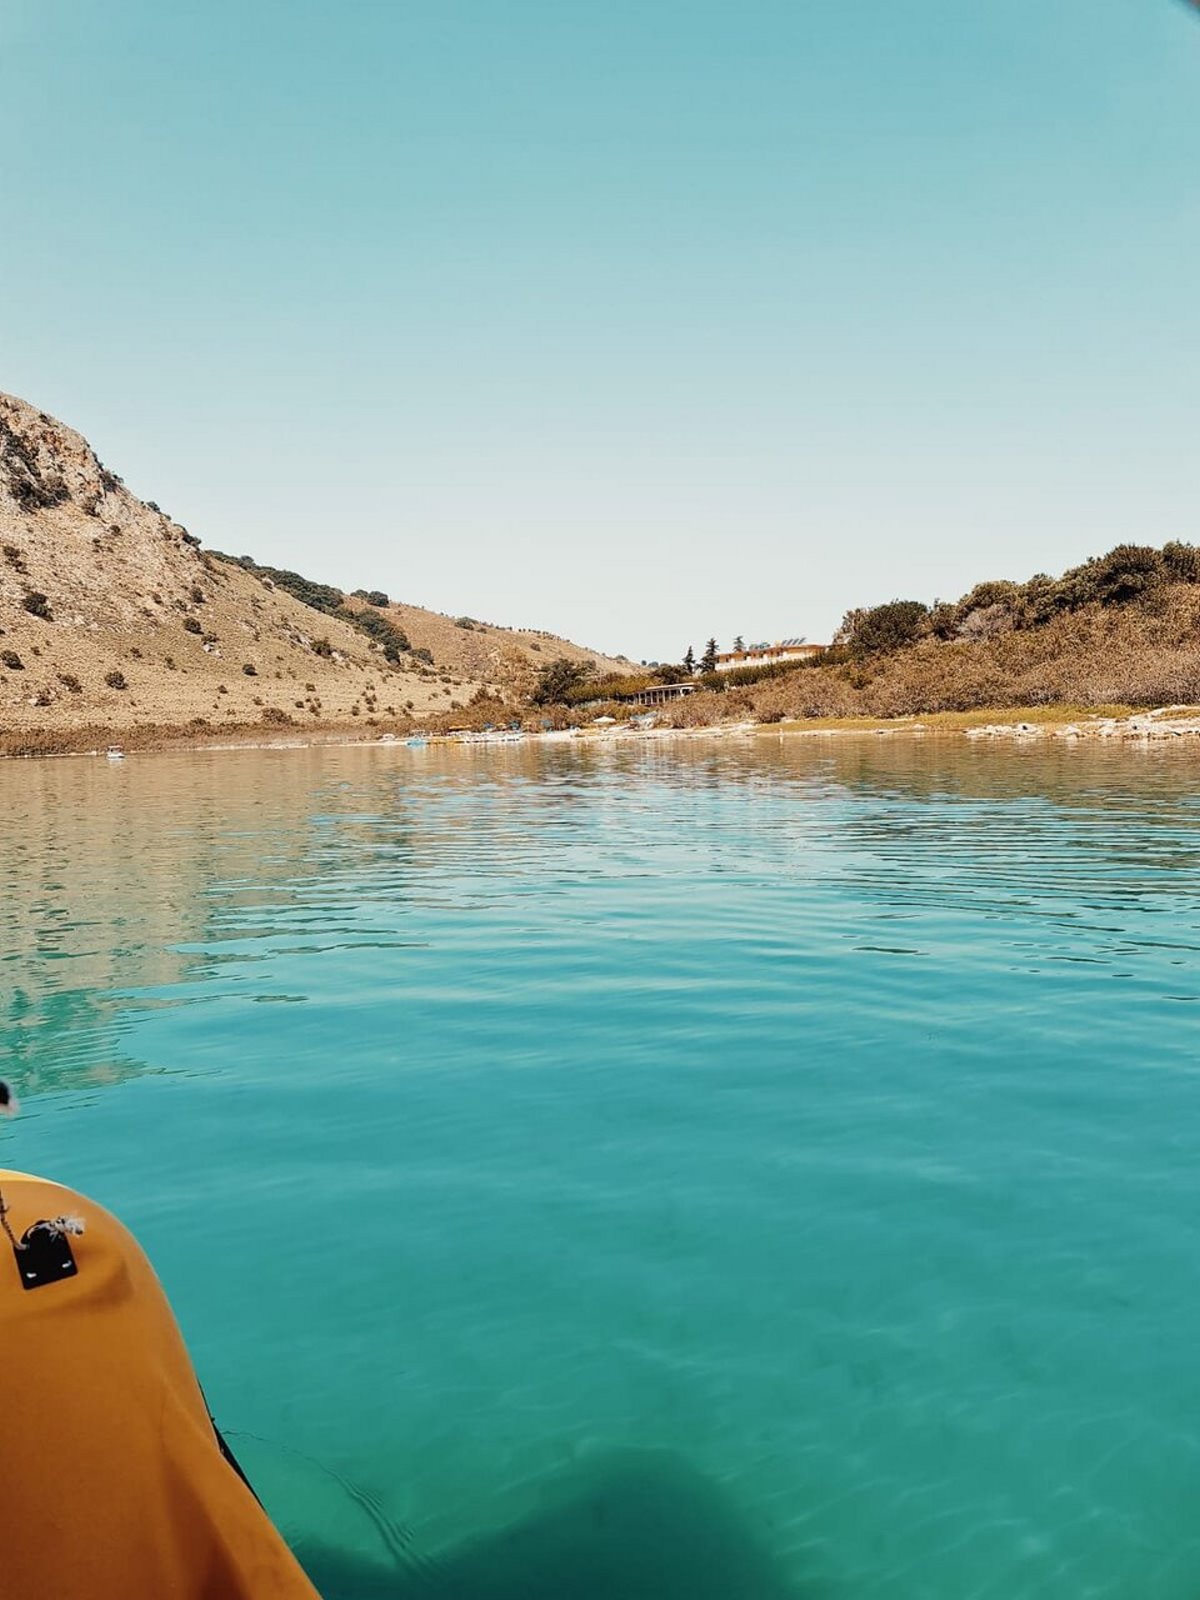 Λίμνη Κουρνά Κρήτη βαρκάδα με κανό στα τιρκουάζ νερά